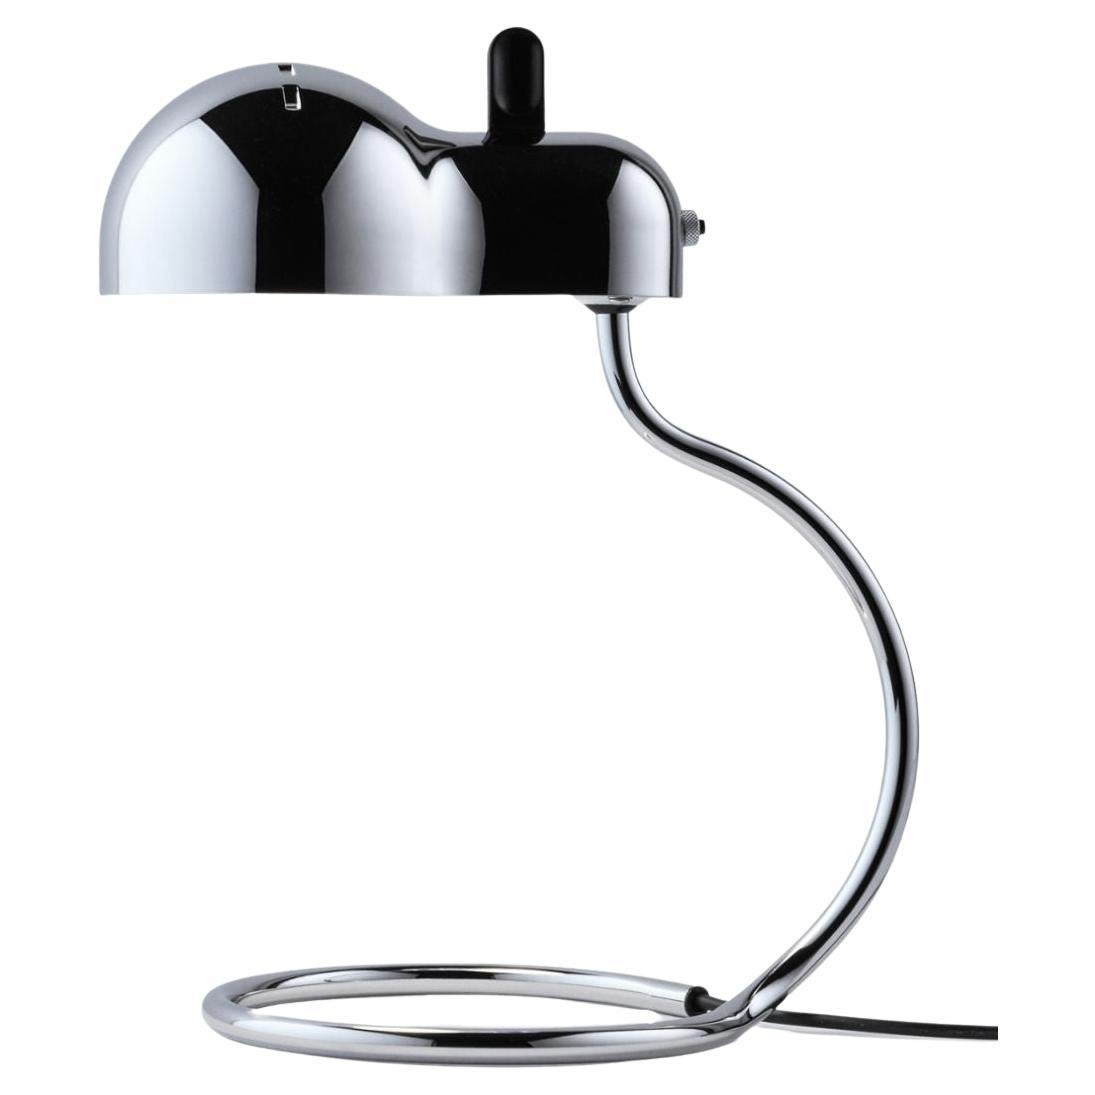 Joe Colombo 'Minitopo' Table Lamp in Chrome for Stilnovo